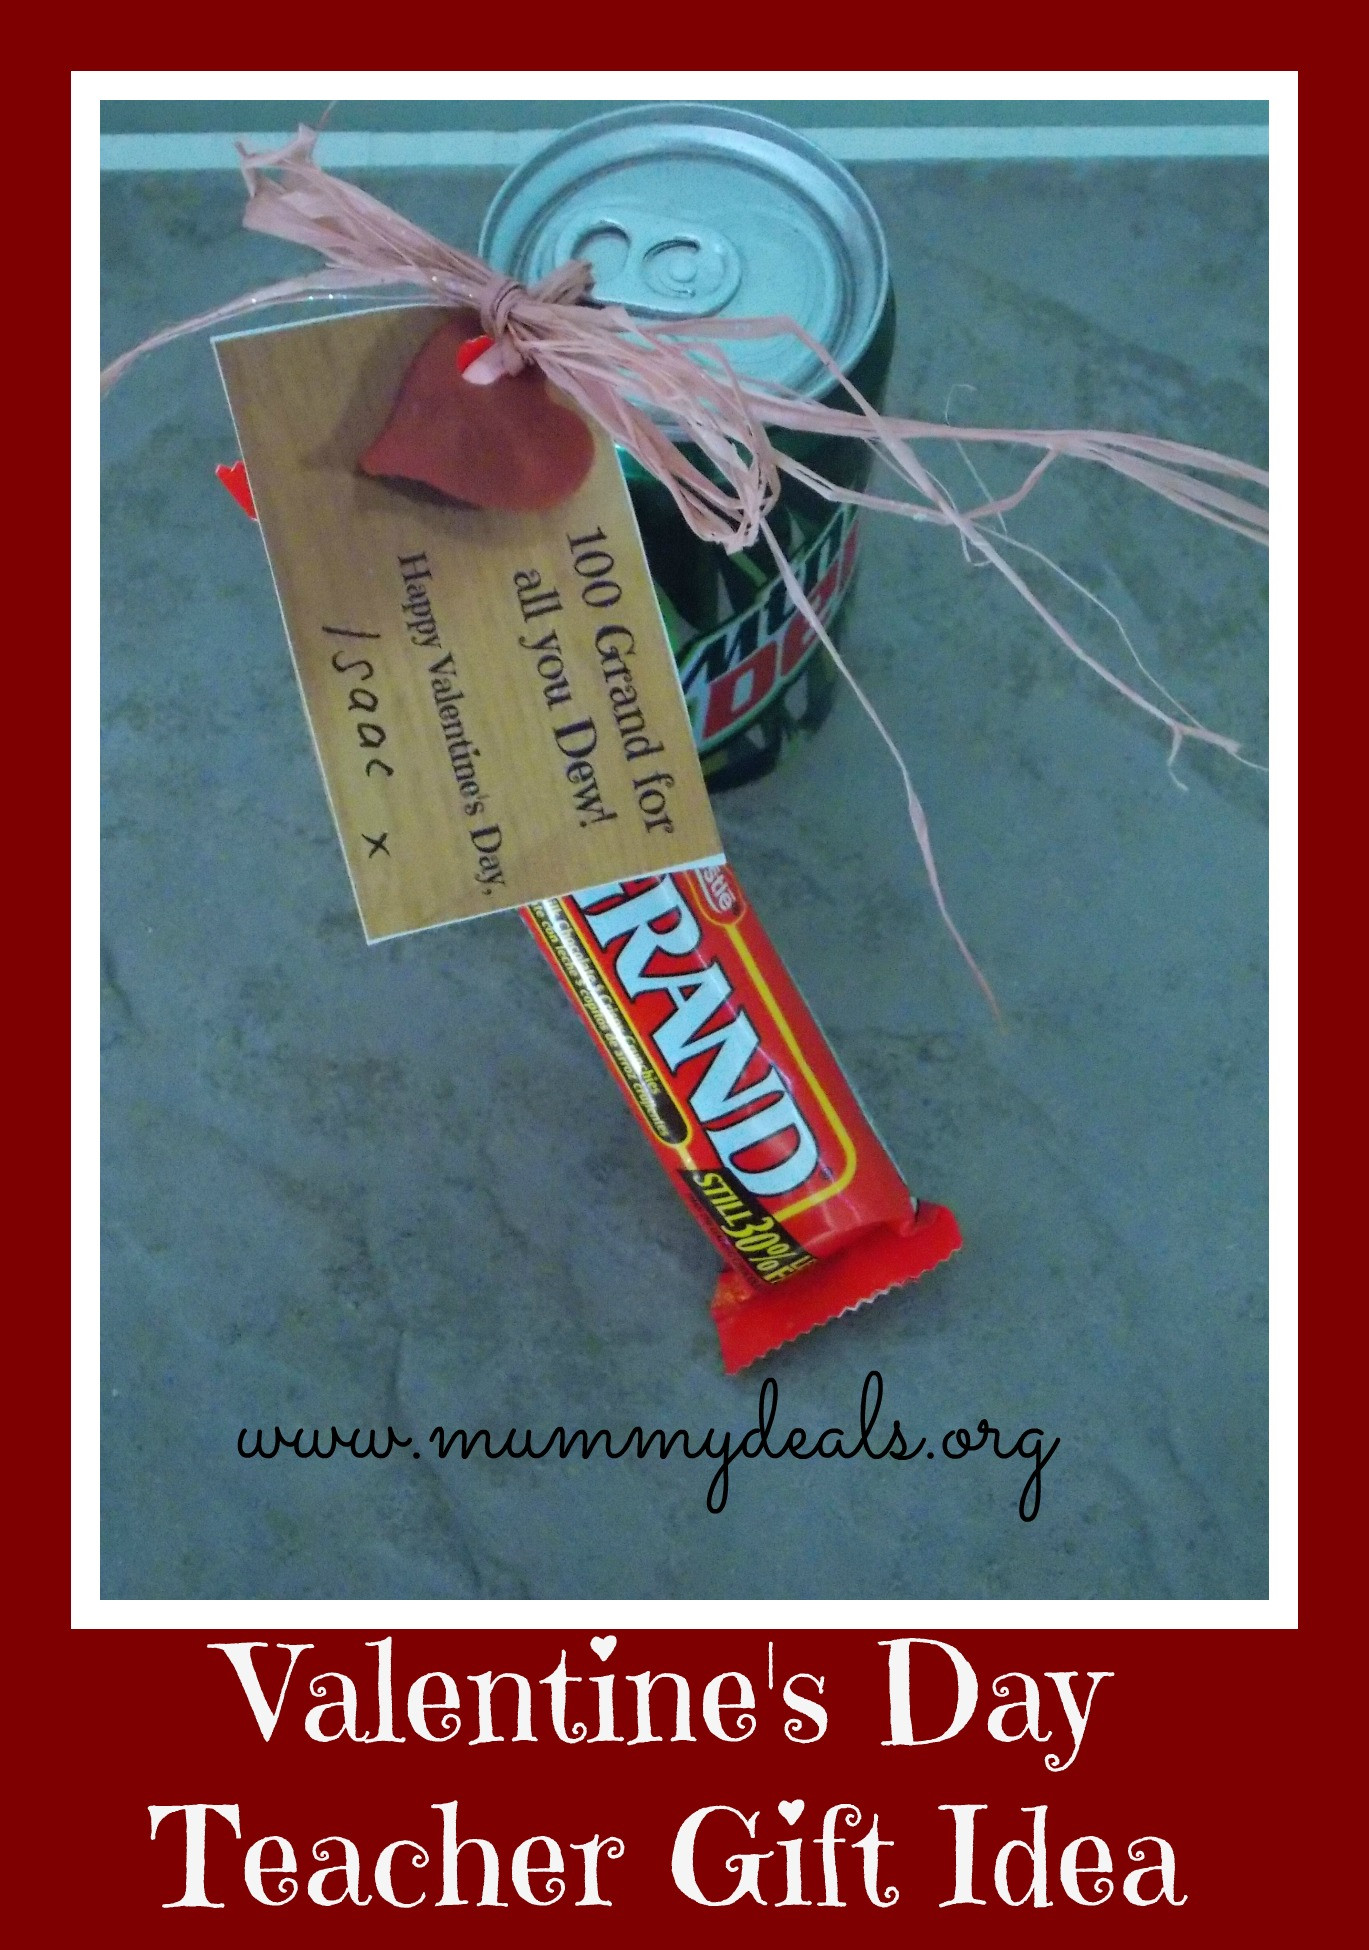 Valentine Gift Ideas For Teacher
 6 Valentine s Day Teacher Gift Ideas Mummy Deals